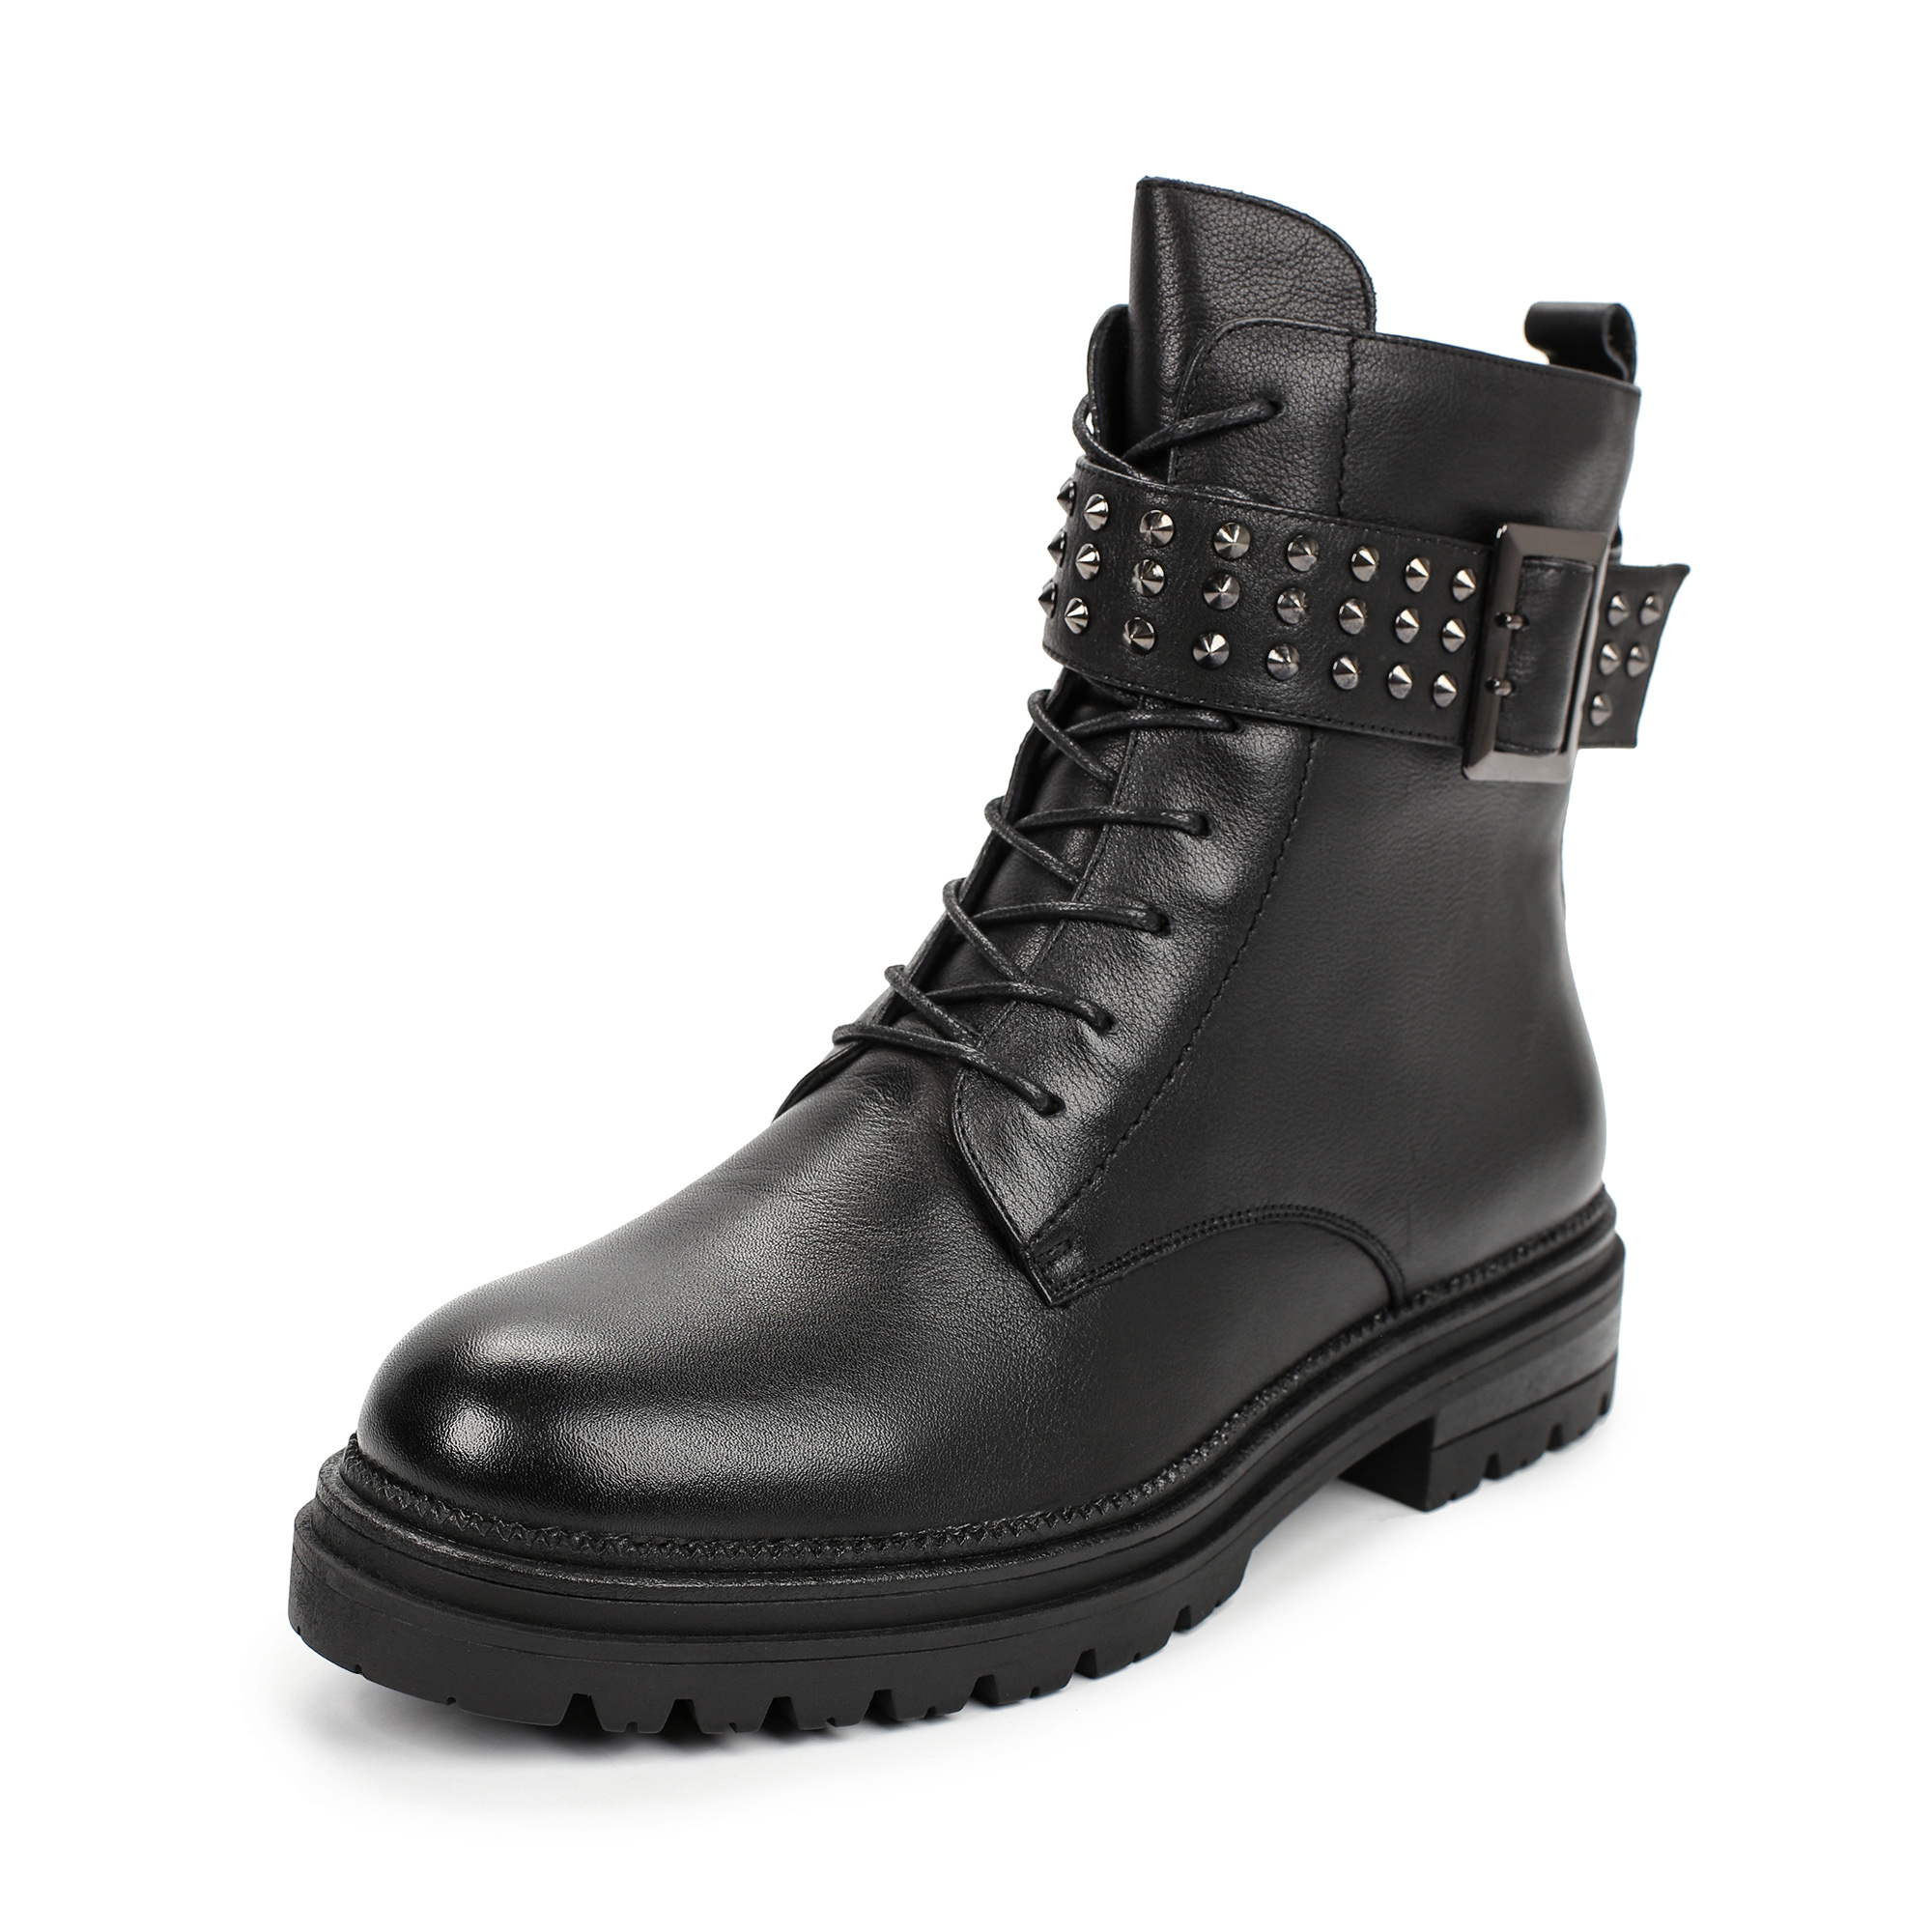 Ботинки Thomas Munz 058-517A-2102, цвет черный, размер 38 - фото 2